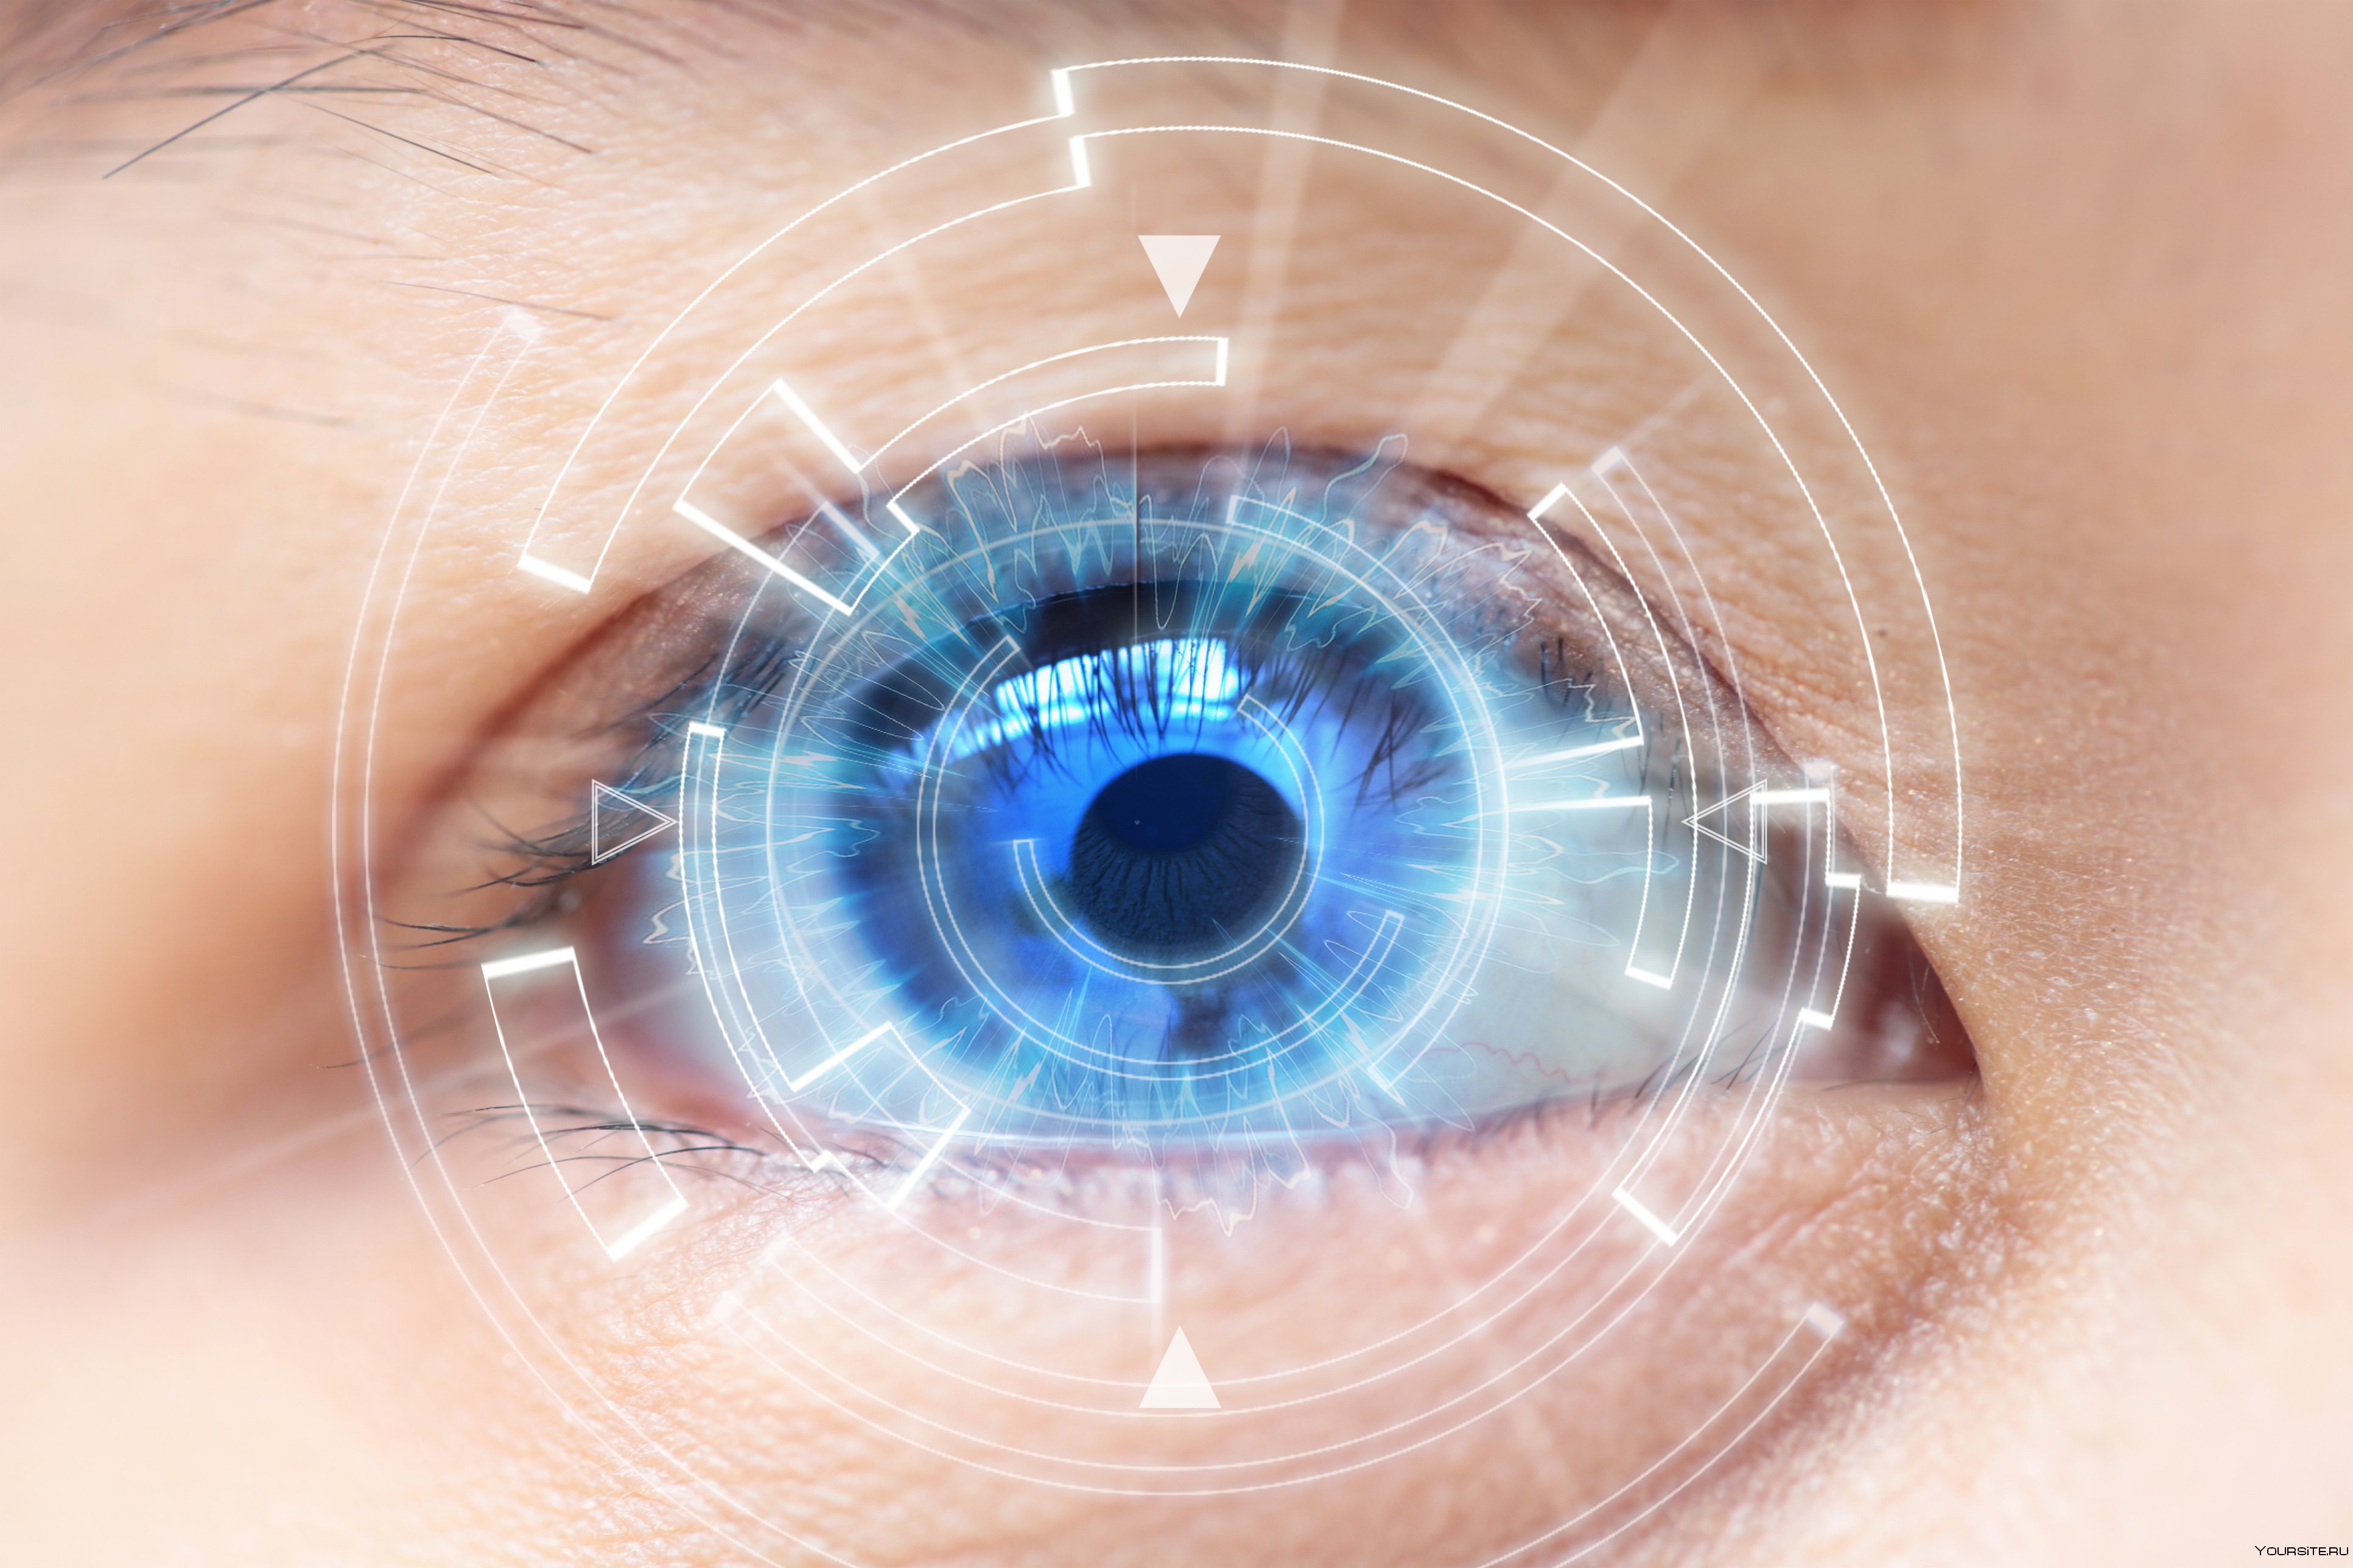 Вт глаз. Зрение. Глаз. Глаз и зрение. Бионические линзы для сверхчеловеческого зрения.